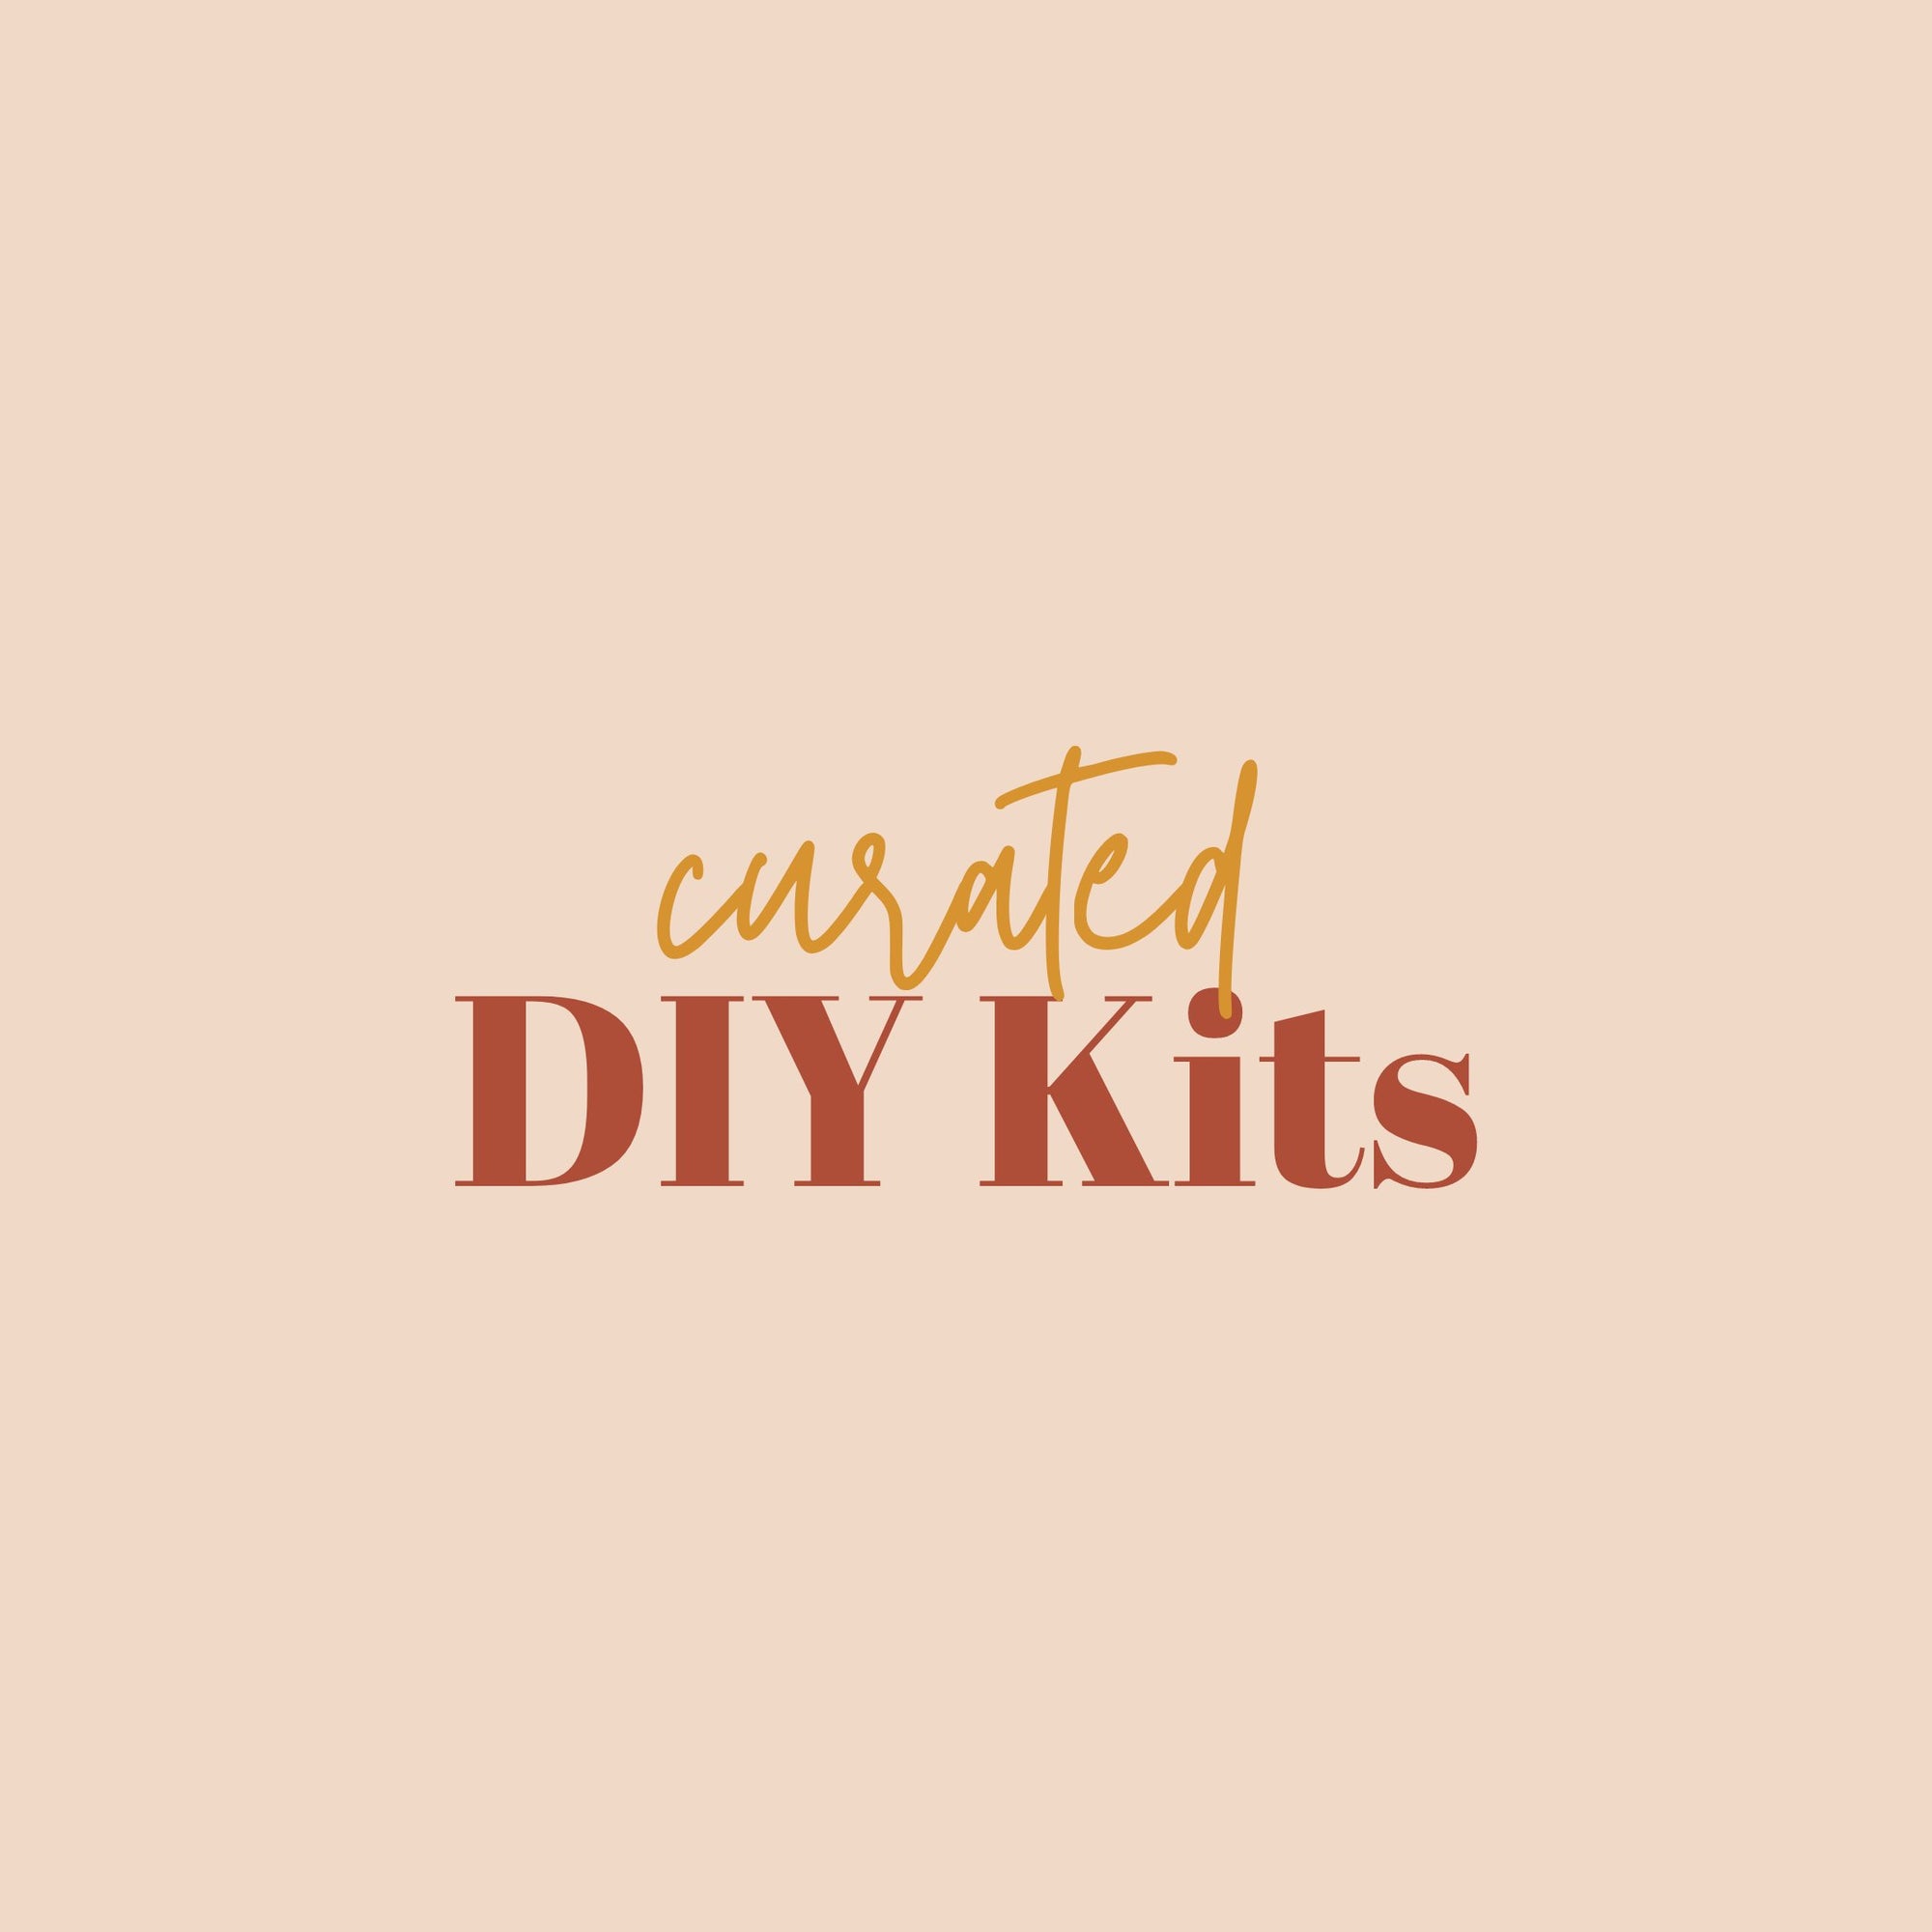 Curated DIY Kits